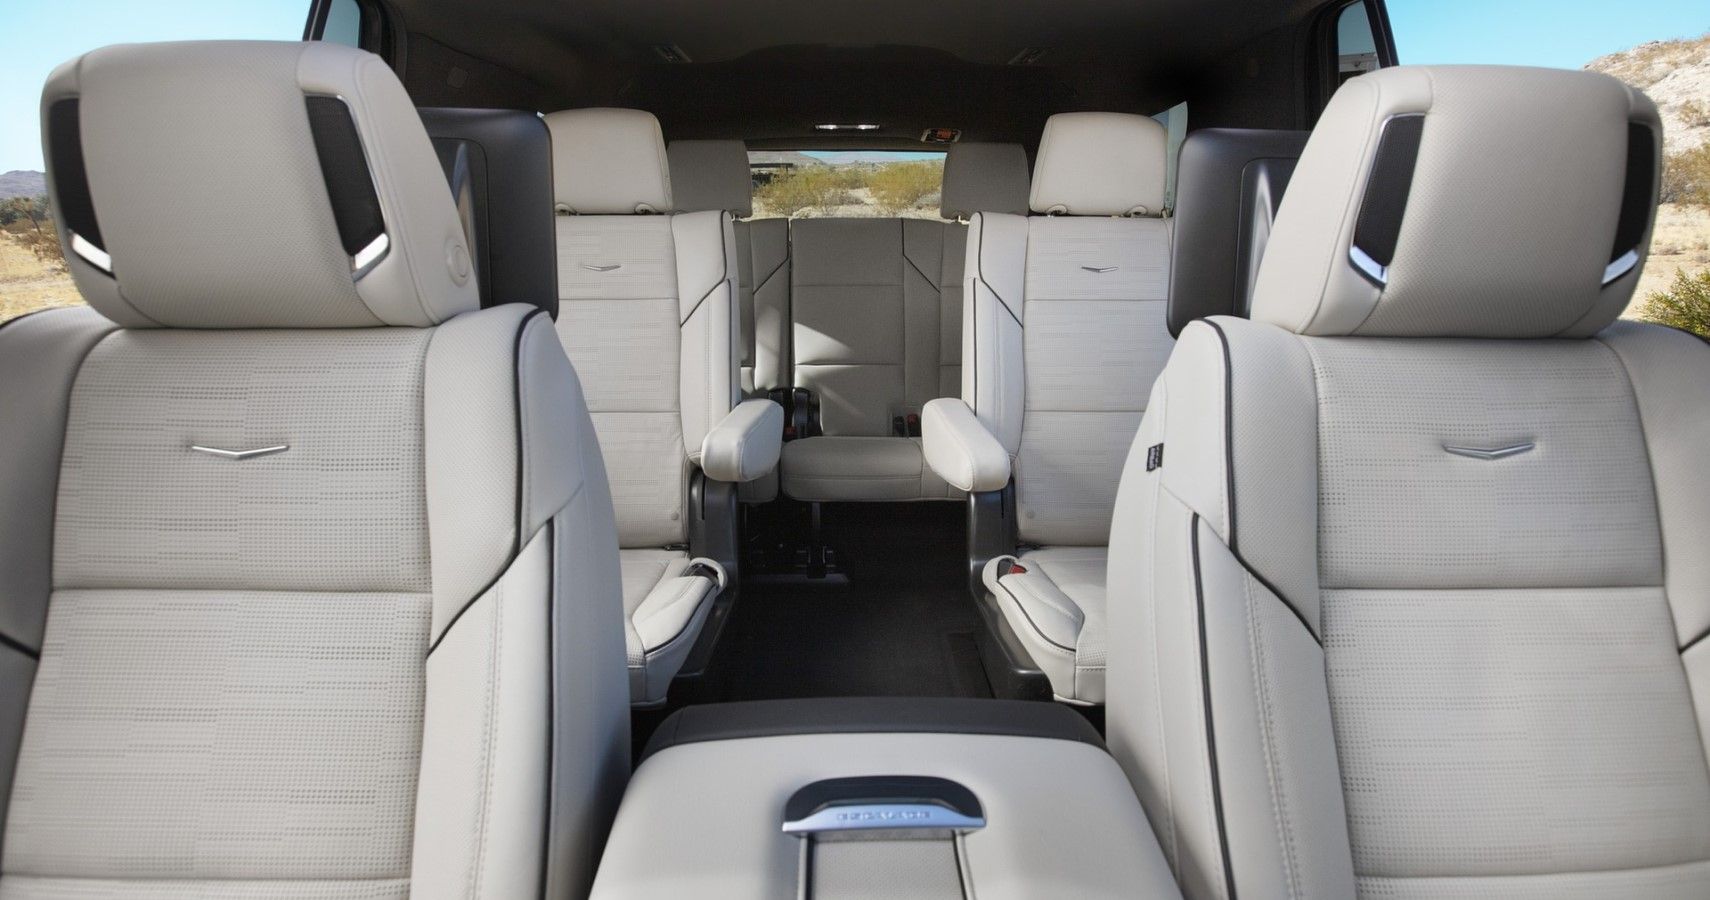 2021 Cadillac Escalade seating layout